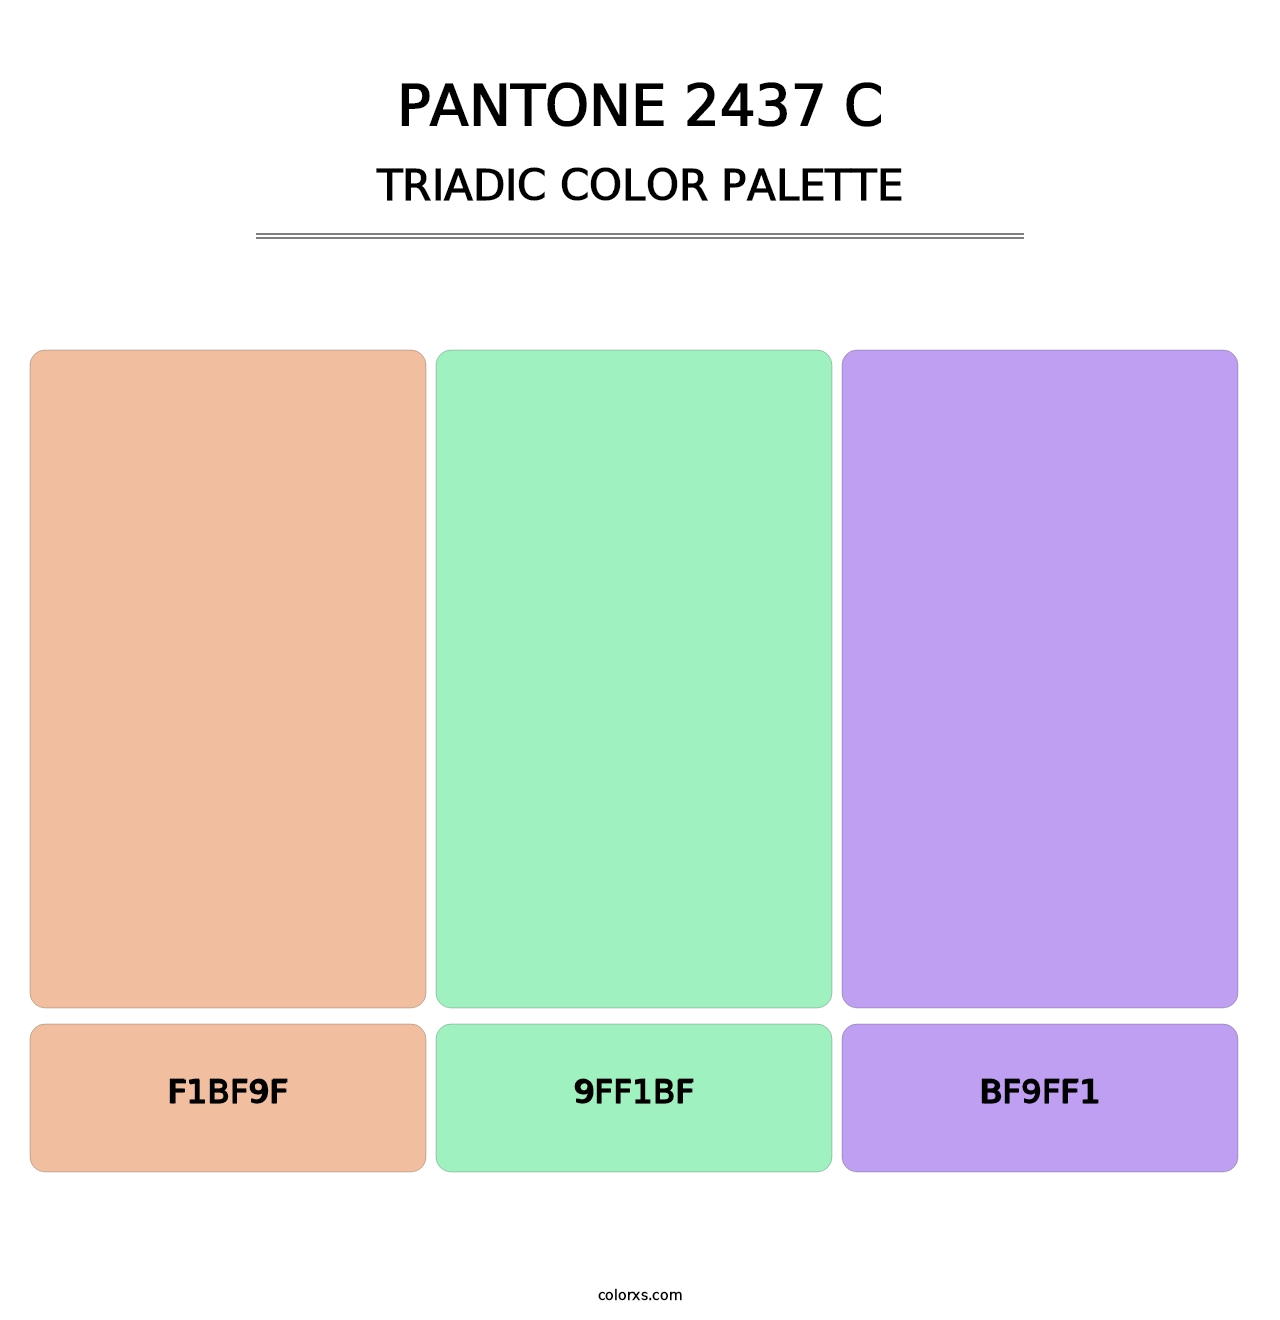 PANTONE 2437 C - Triadic Color Palette